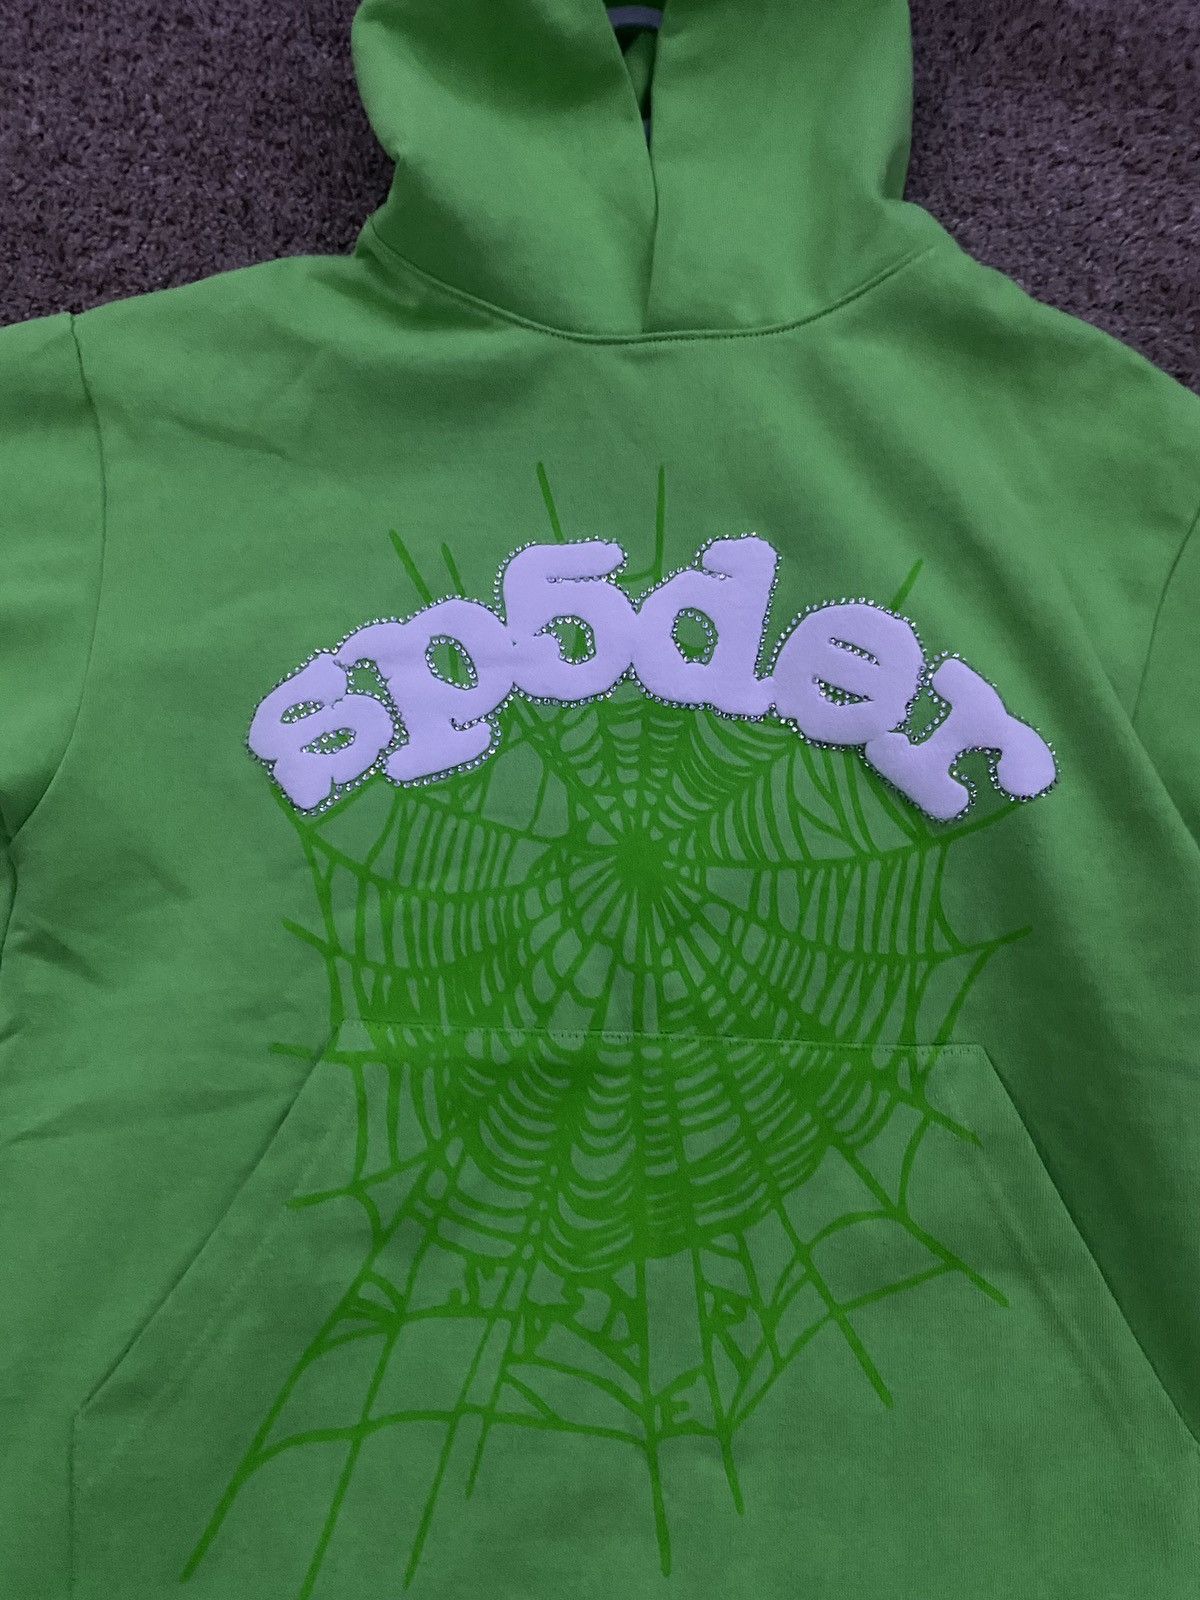 Streetwear Sp5der Web Hoodie Slime Green | Grailed